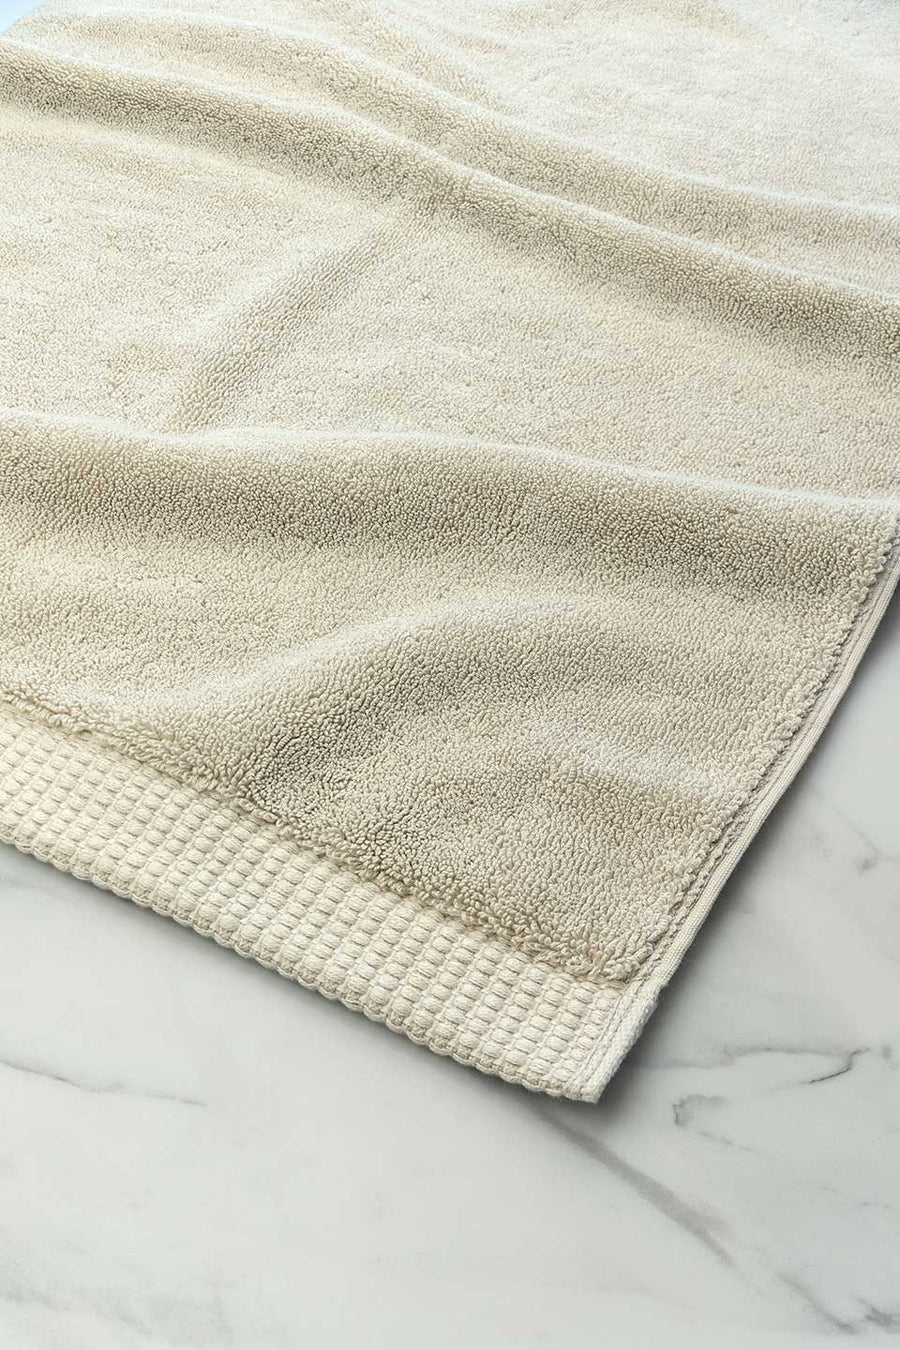 Beige Egyptian Cotton™ Bath Mat.